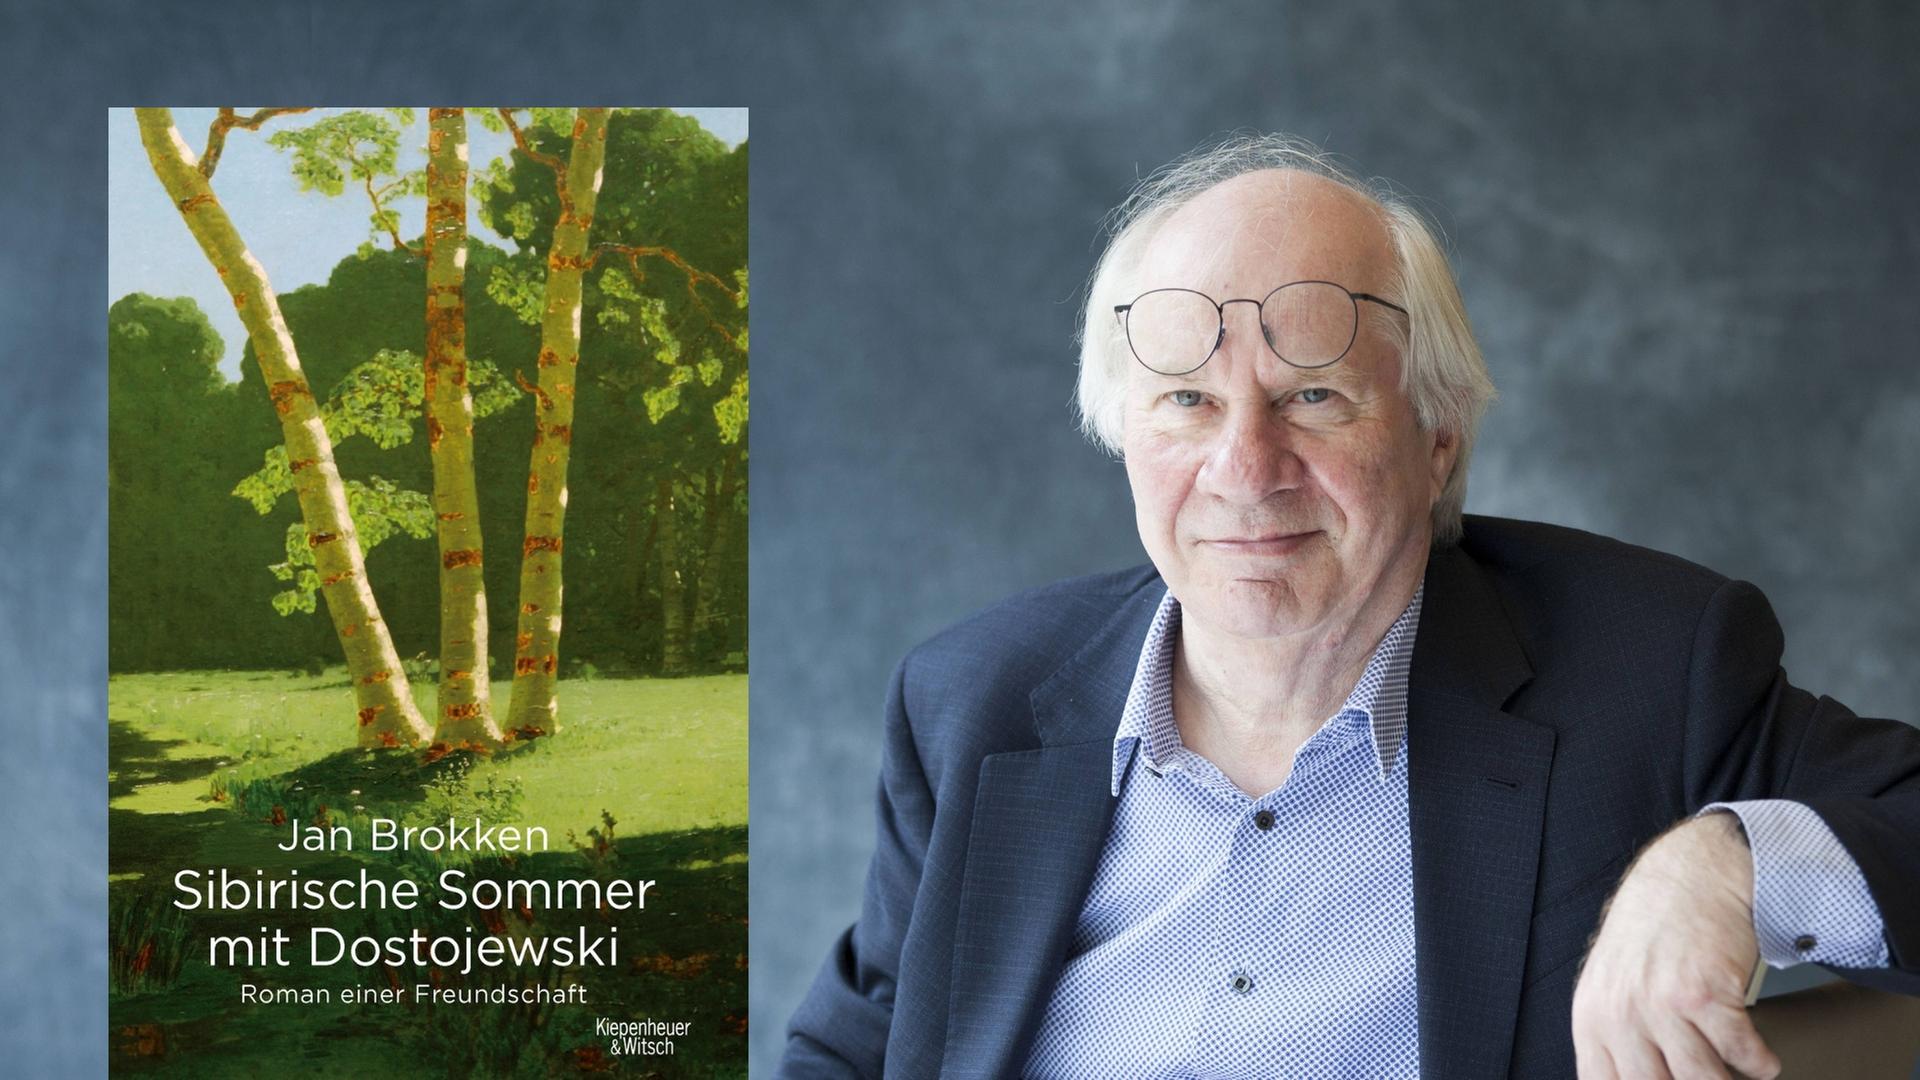 Buchcover: Jan Brokken: „Sibirische Sommer mit Dostojewski. Roman einer Freundschaft“